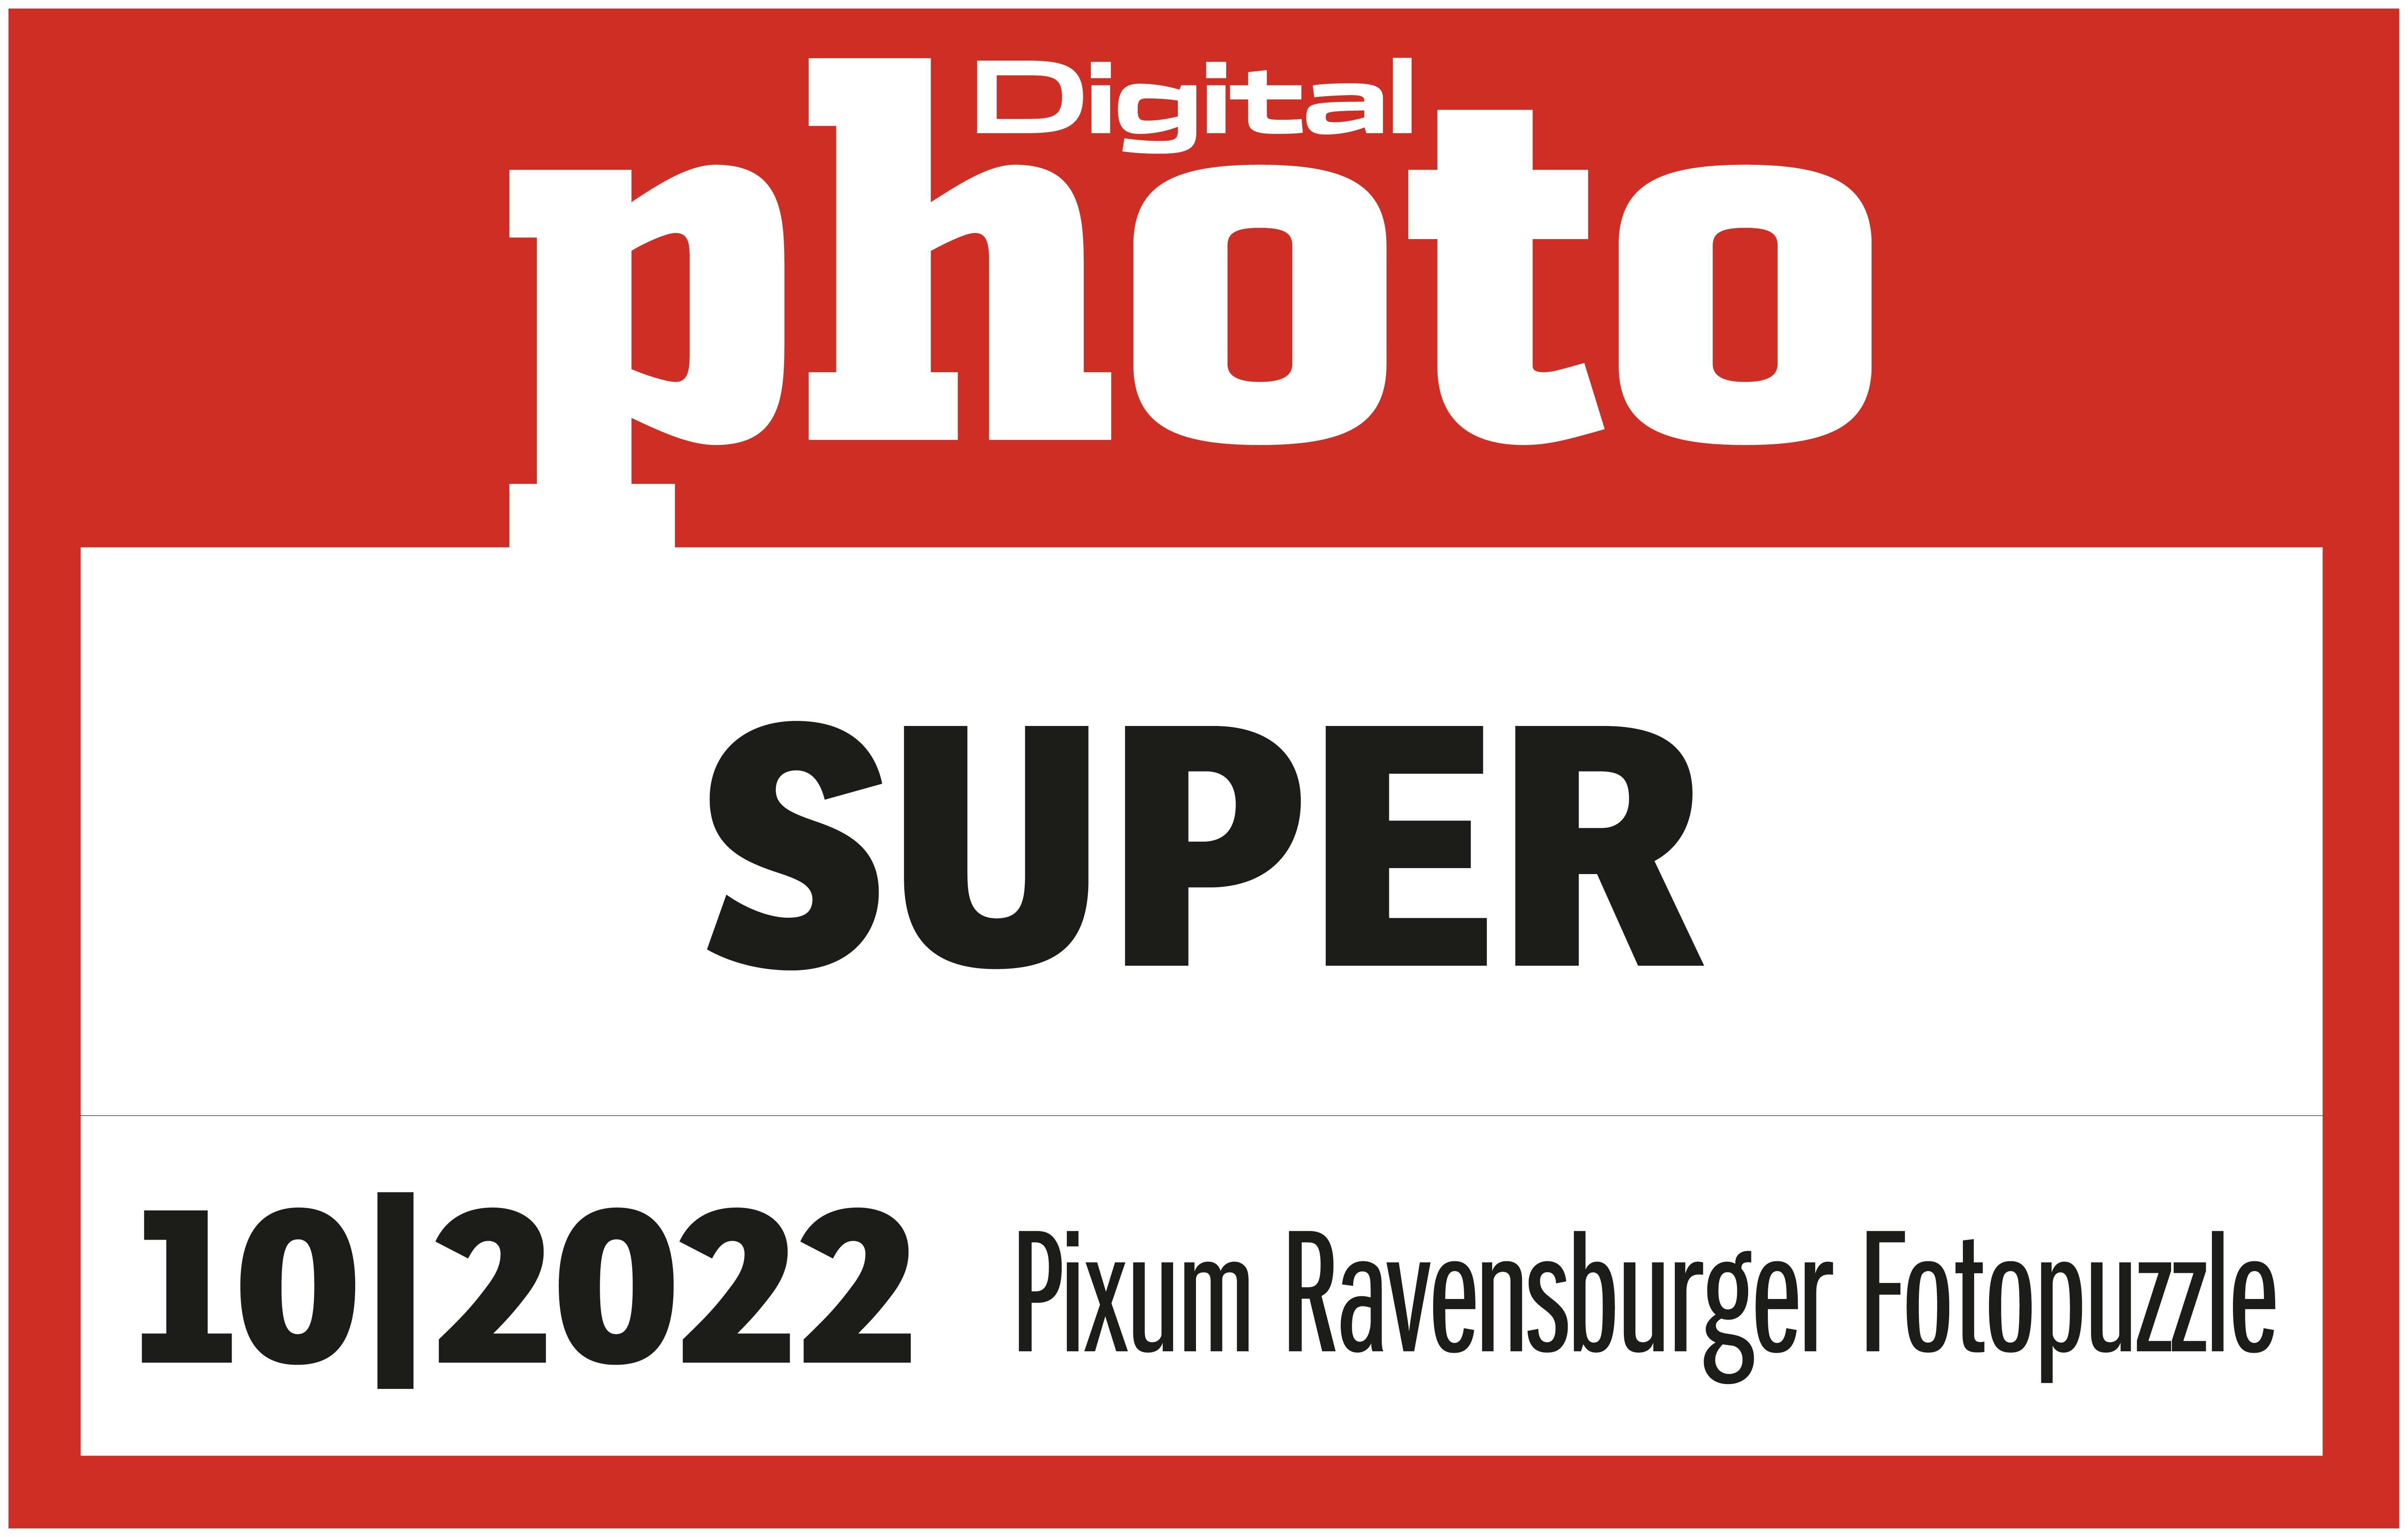 Auszeichnung "Super" von DigitalPHOTO in der Ausgabe 08/2022 für das Pixum Ravensburger Fotopuzzle